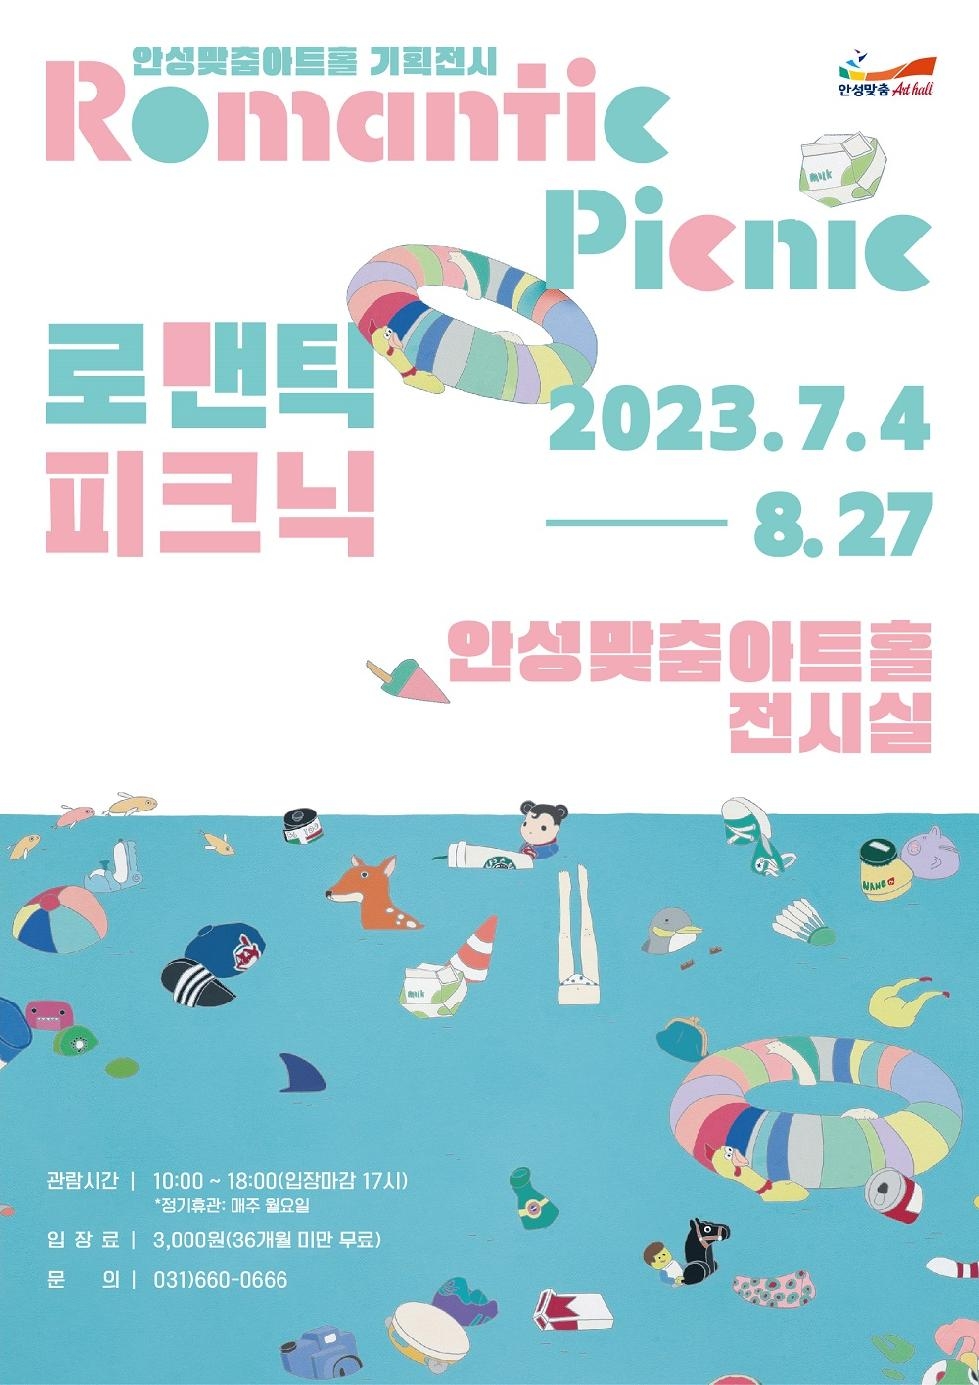 안성맞춤아트홀 기획 전시, 양은혜 작가 ‘로맨틱 피크닉’ 展 개최